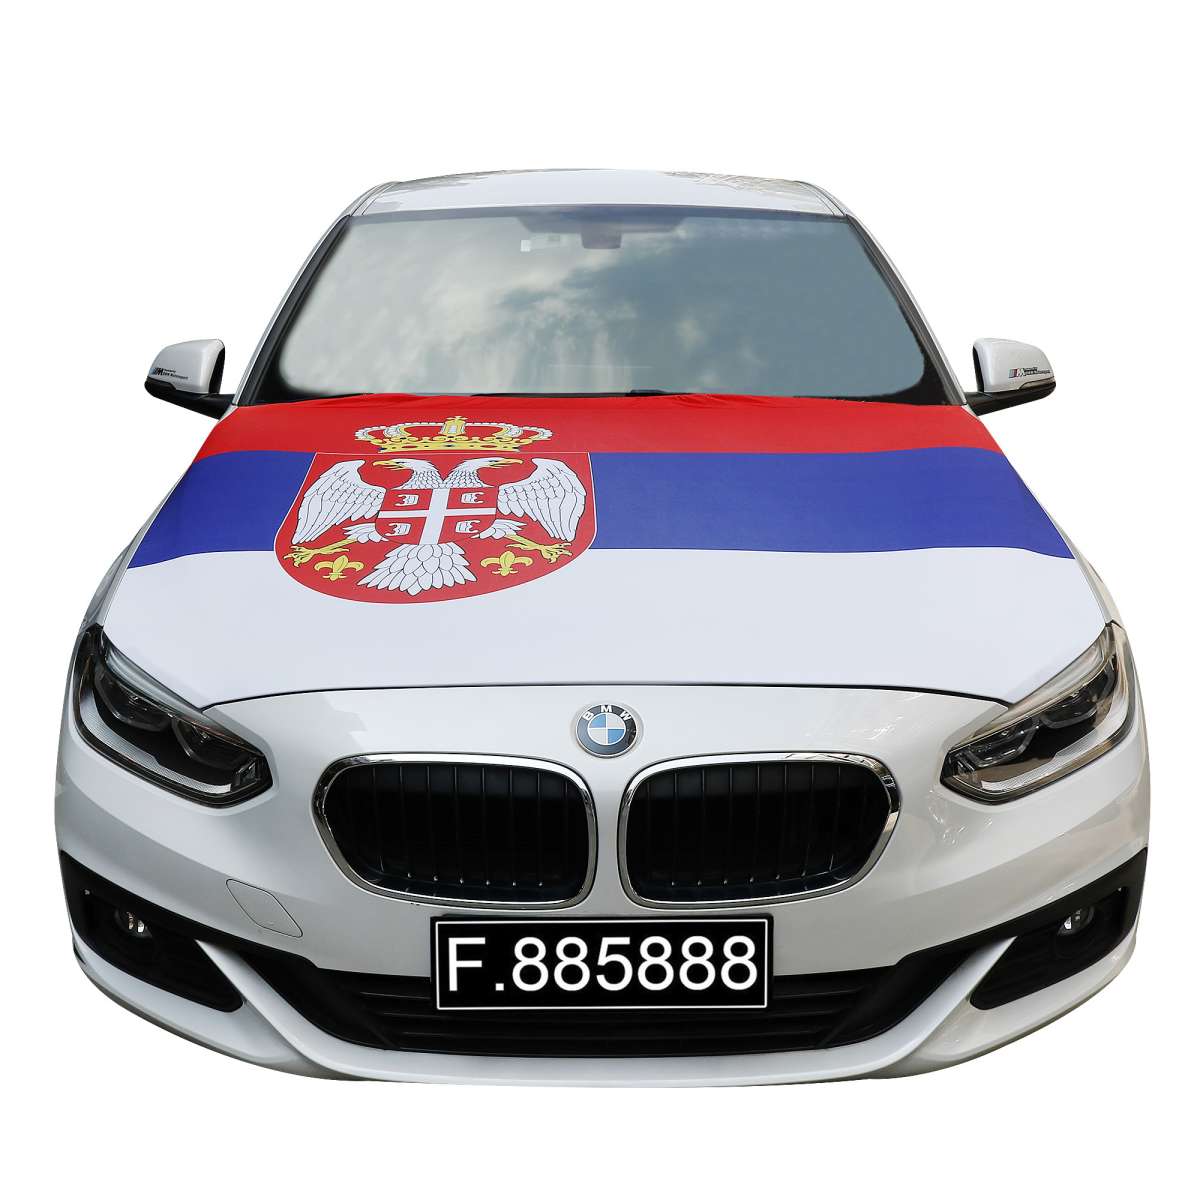 Serbien Motorhaubenflagge